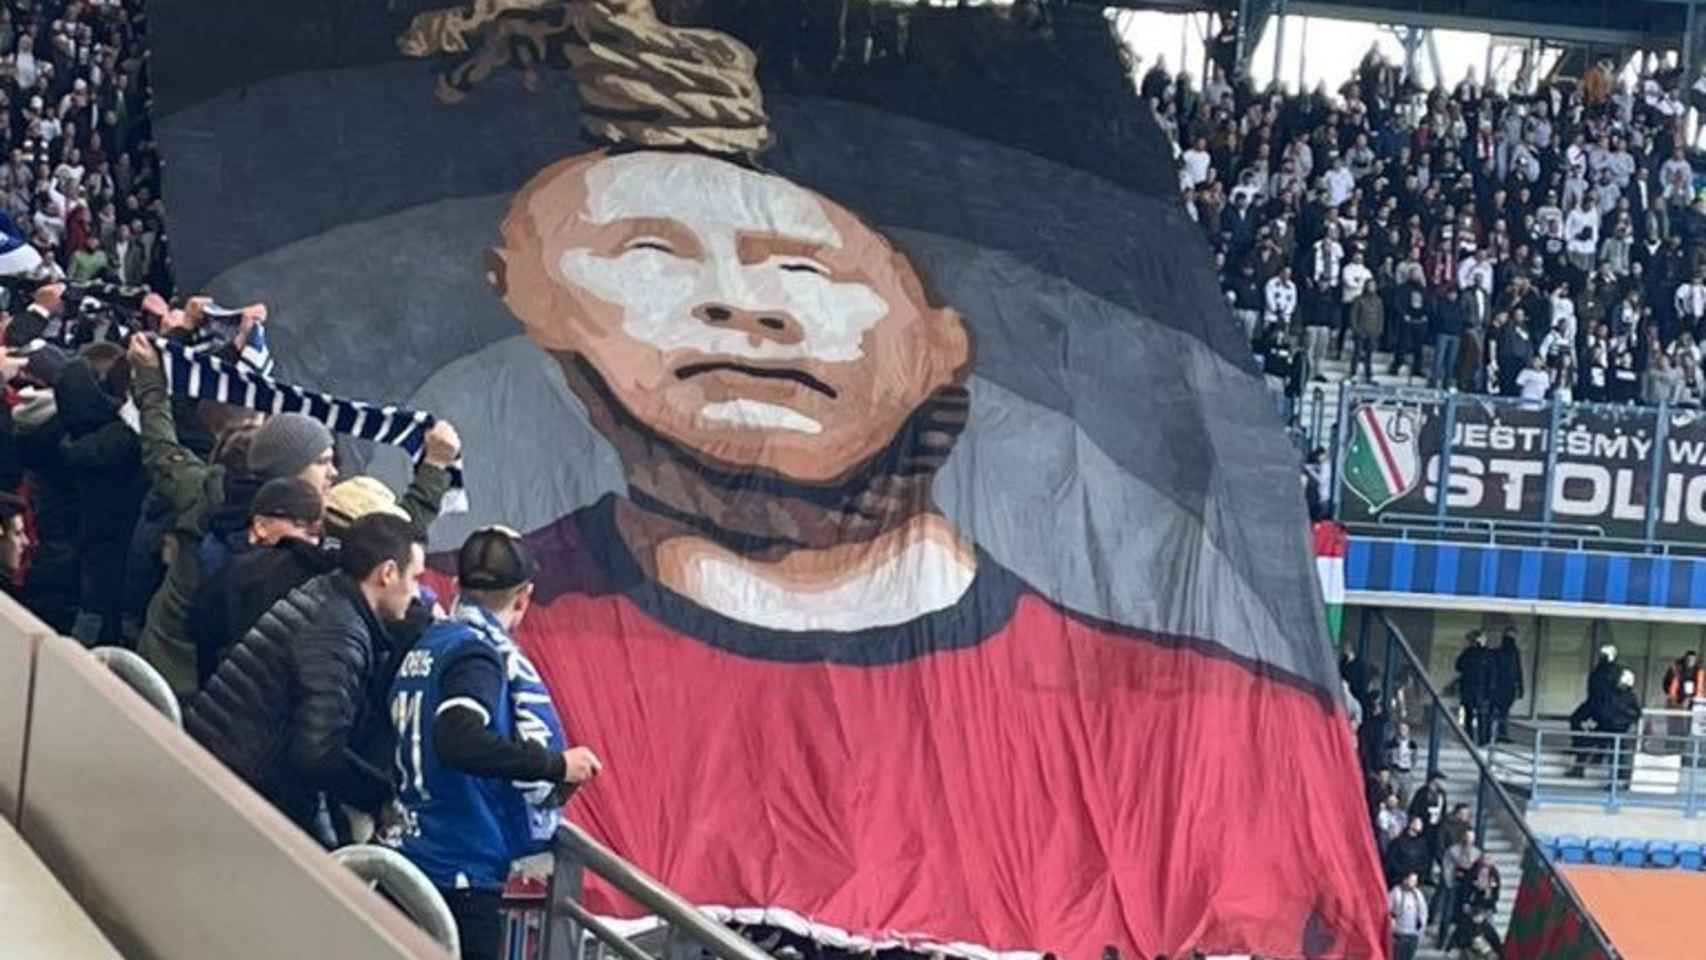 El tifo de los los ultras del Lech Poznan con Vladimir Putin muerto y colgado de una soga.